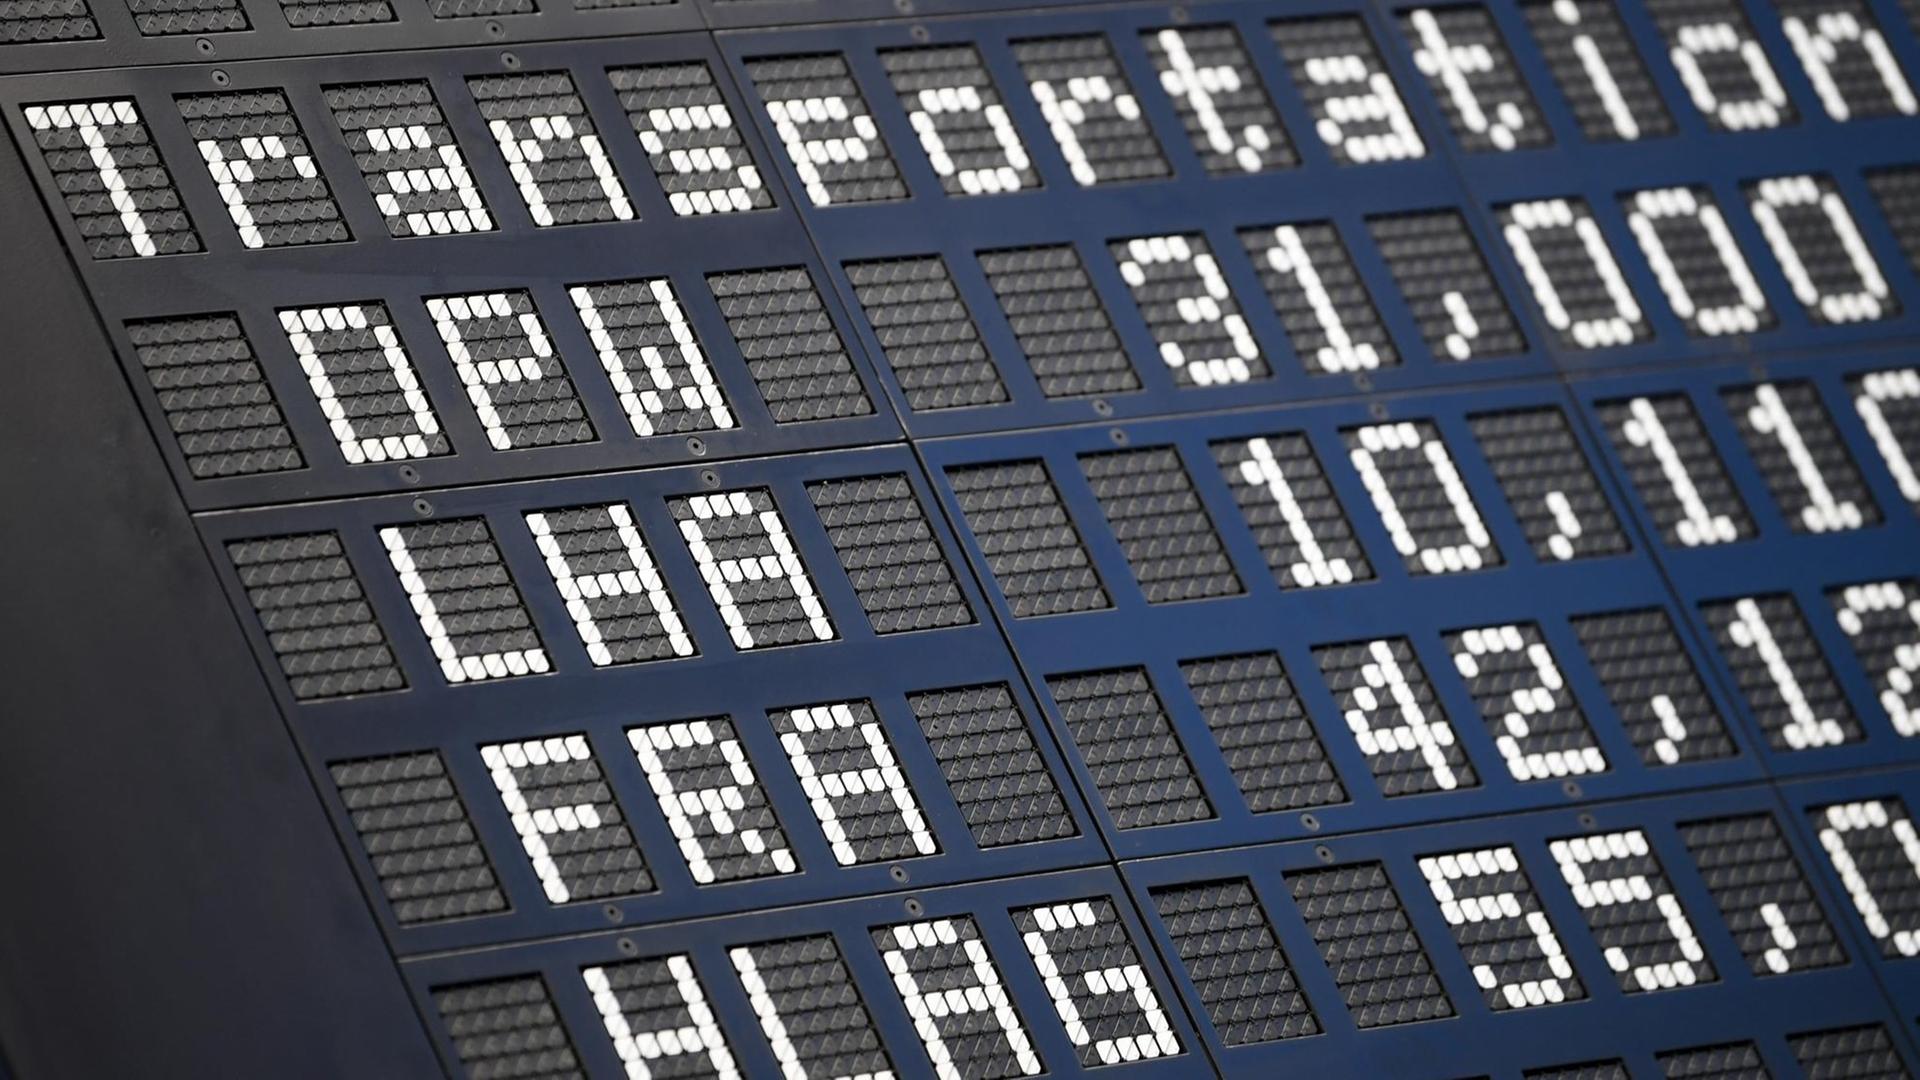 Frankfurt/Main: Die Aktie der deutschen Fluggesellschaft Lufthansa wird mit dem Kürzel LHA auf der Anzeigetafel der Frankfurter Wertpapierbörse bei den Transport-Werten über der Aktie des Flughafenbetreibers Fraport (FRA) gelistet.